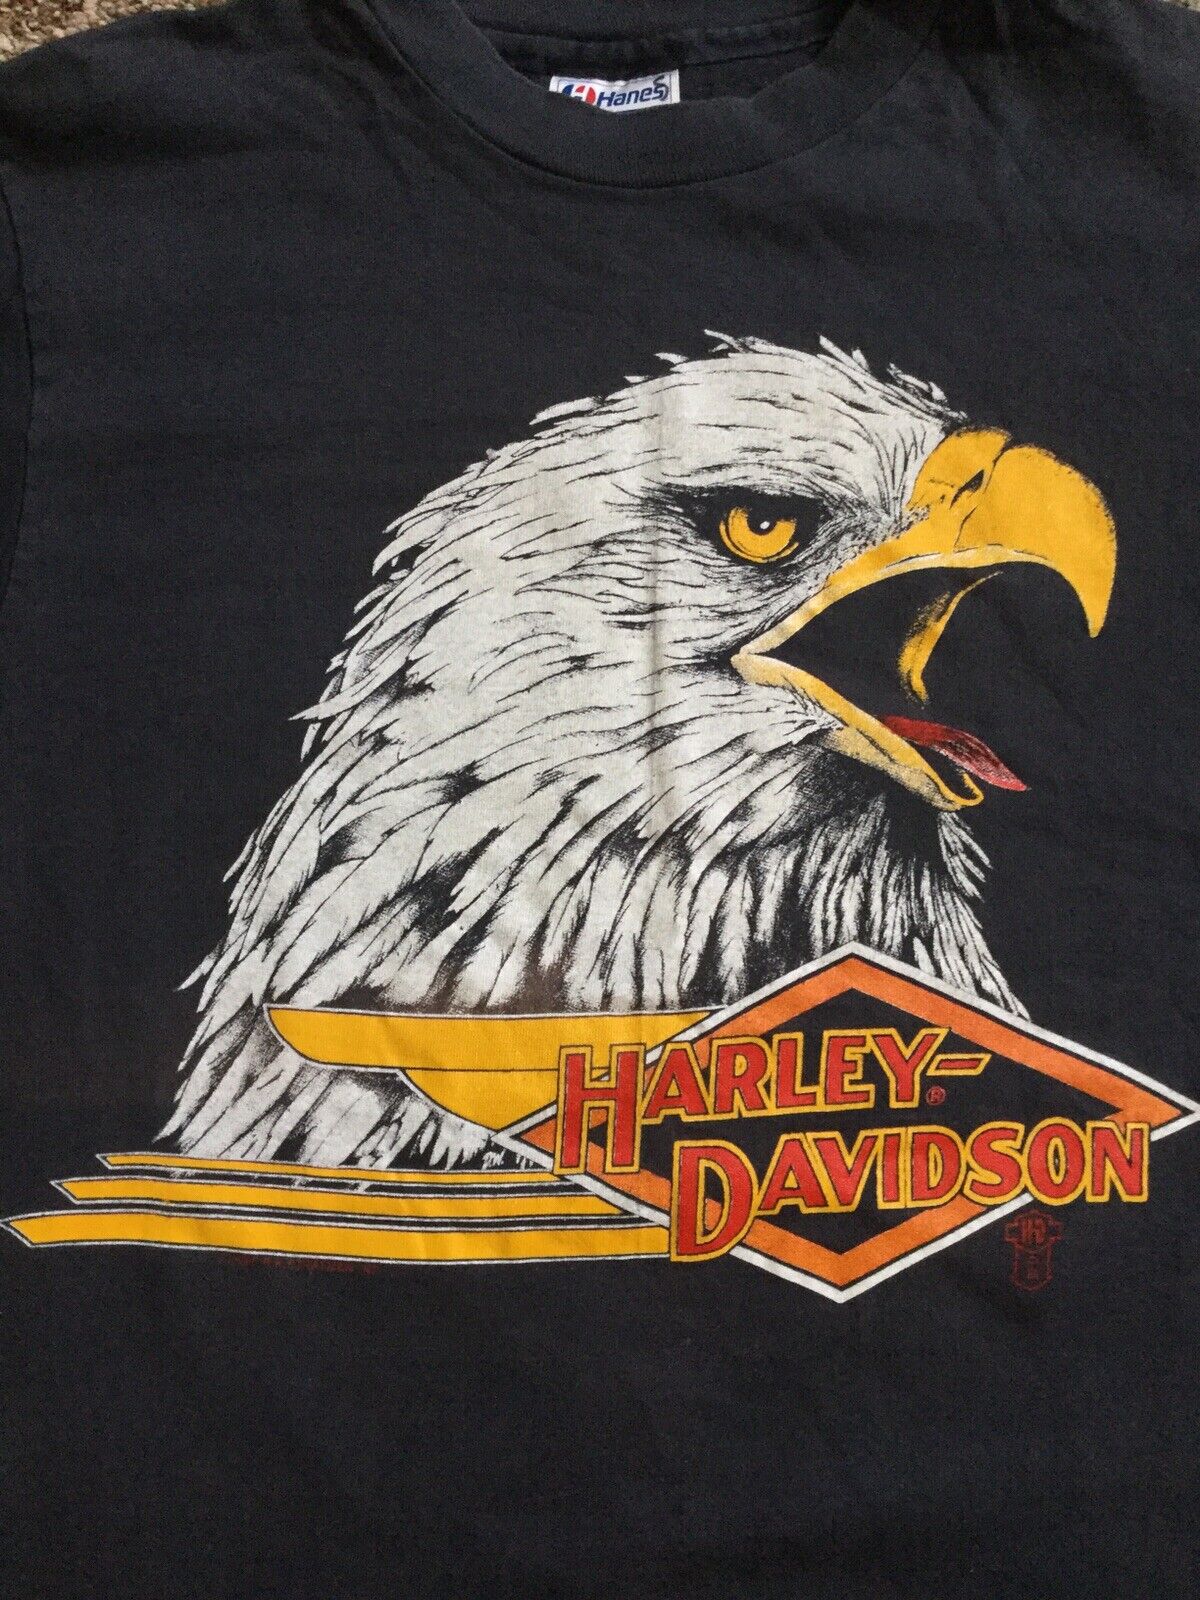 Vintage 1988 Harley Davidson Shirt Eagle Black Hills Rapid City -Small